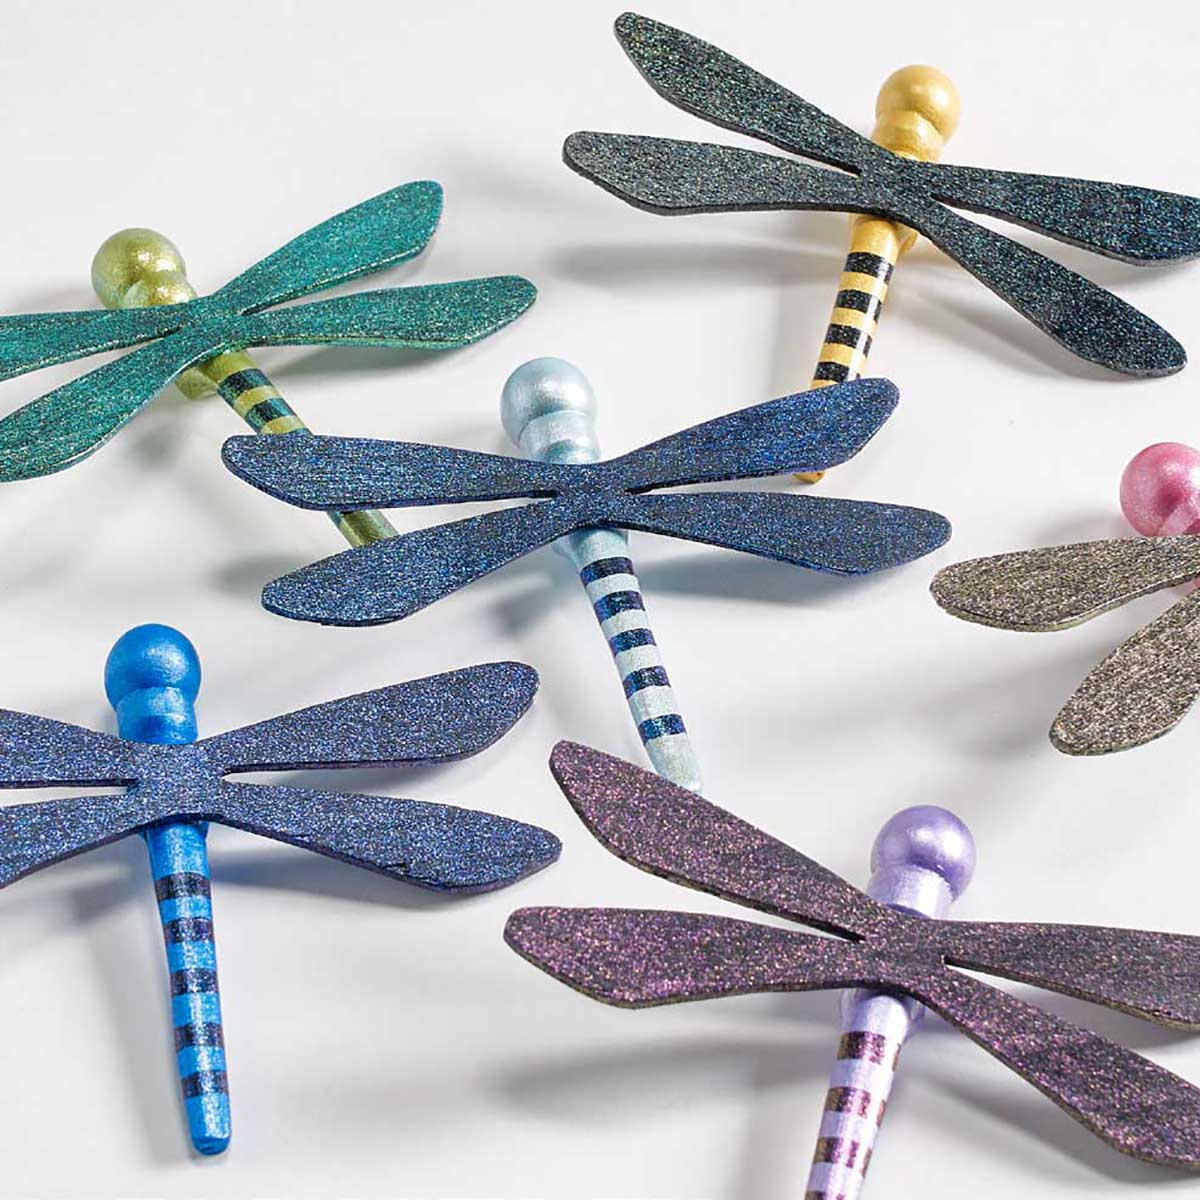 Folkart - Dragonfly Glaze 2oz - Red -violet -blauwe verschuiving